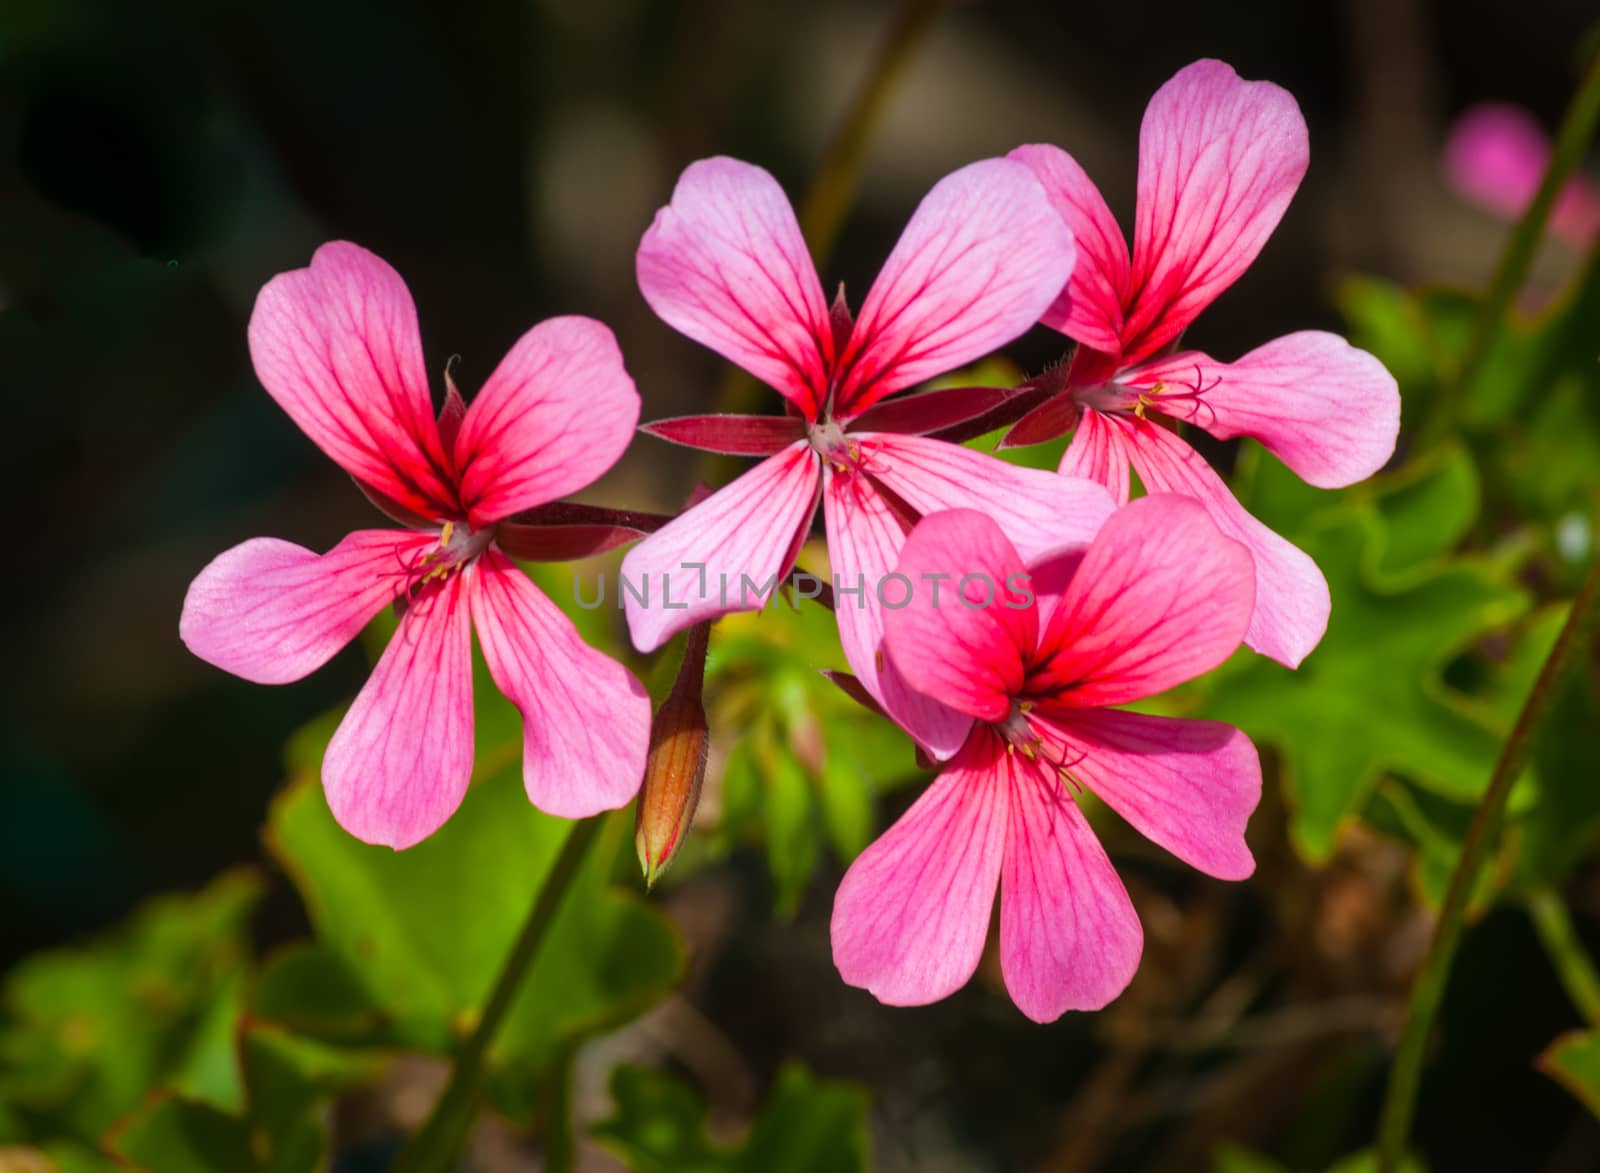 Closeup of little pink flowers in a garden